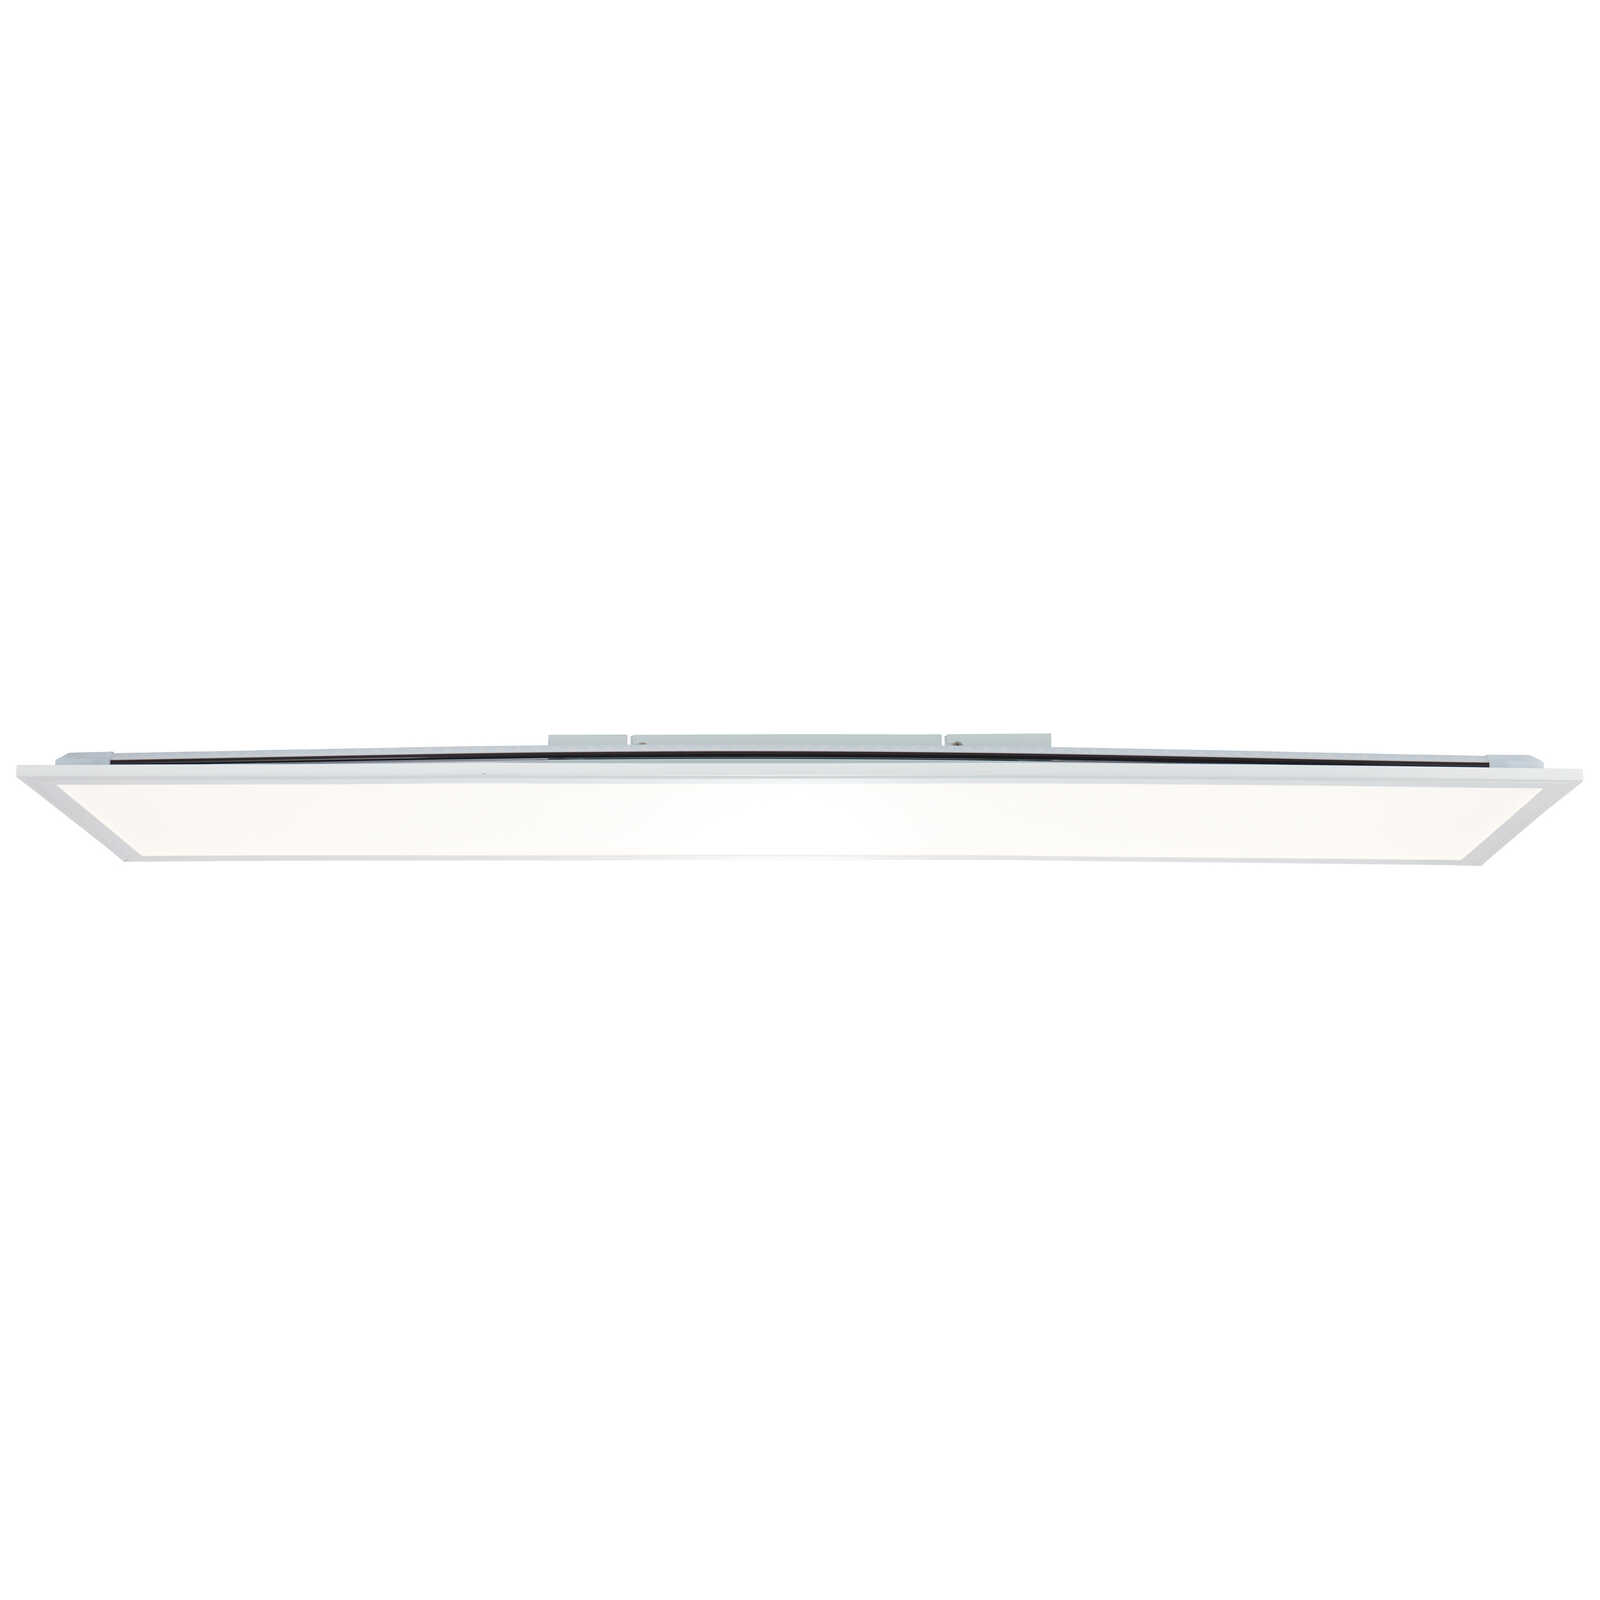             Plastic ceiling light - Albert 5 - White
        